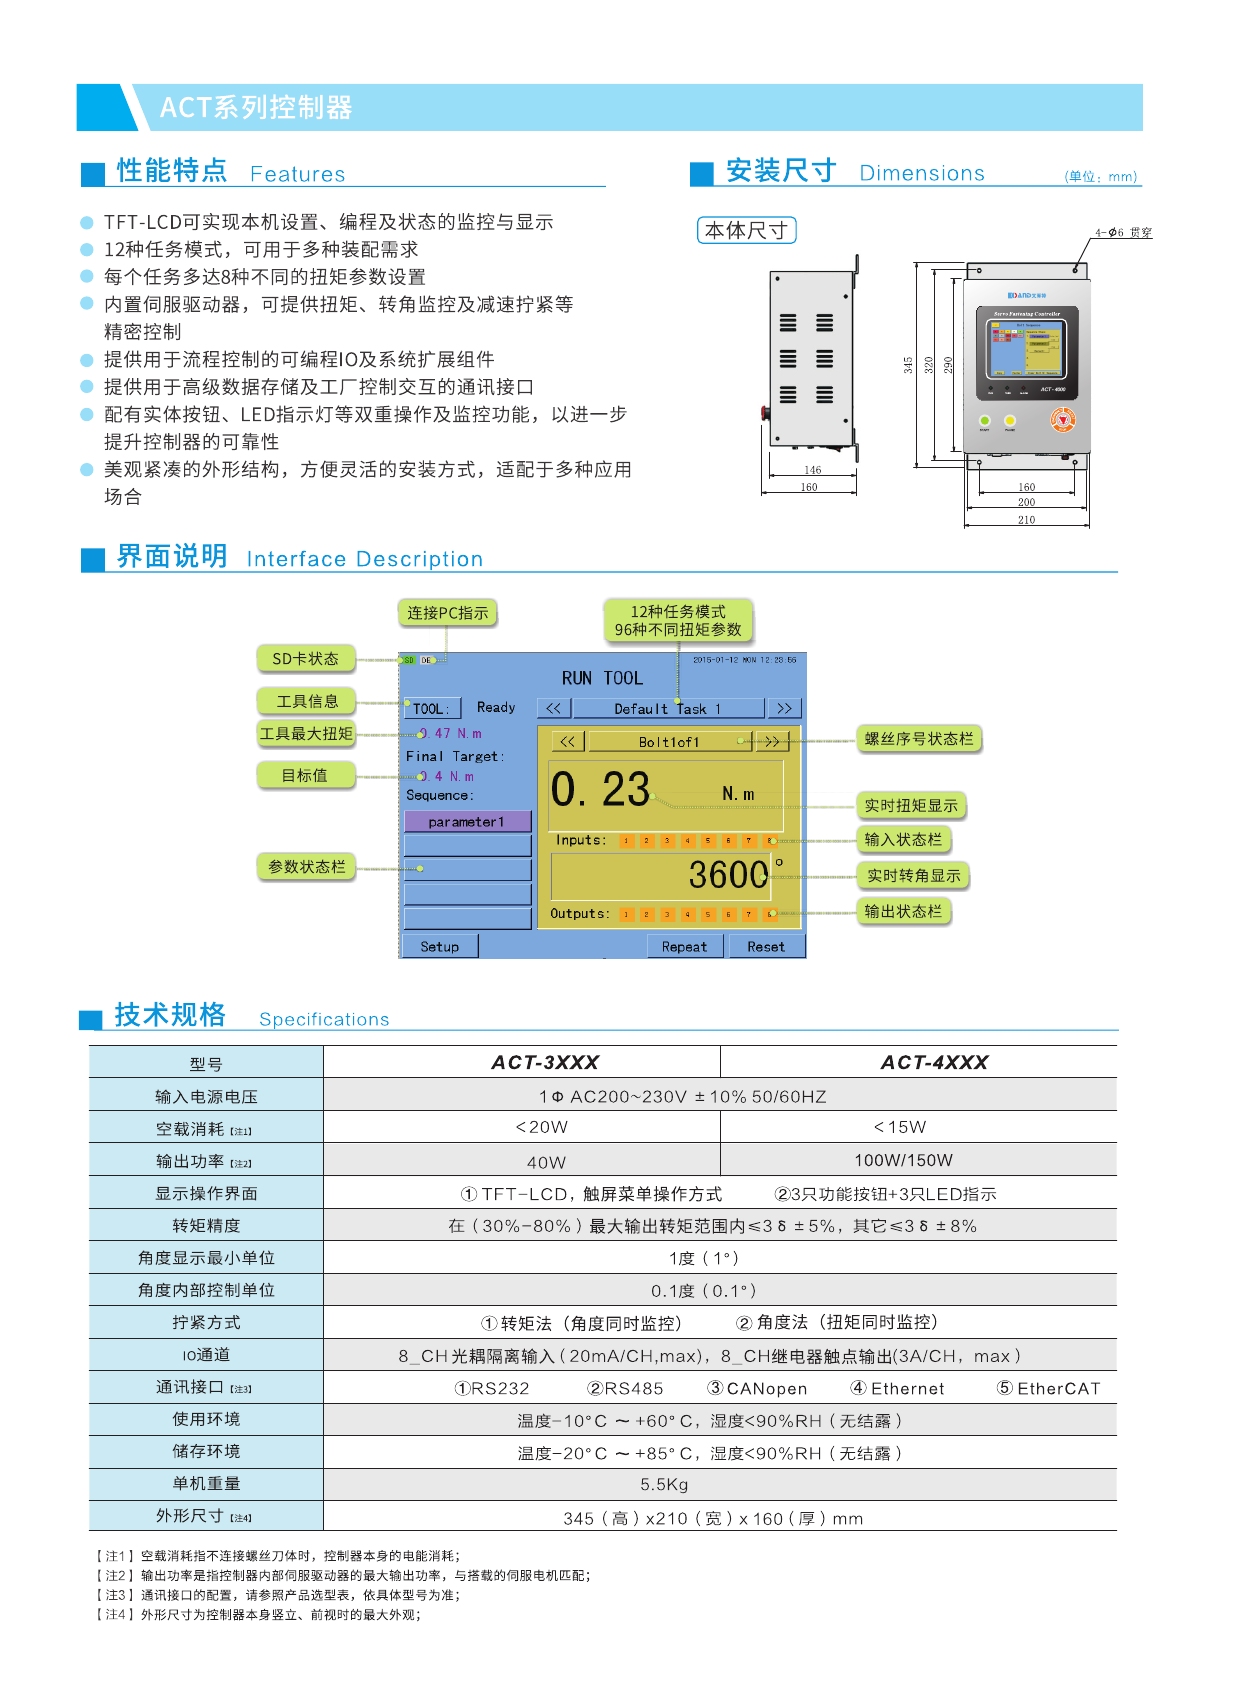 水平四关节机械手 高可靠性伺服拧紧系统设备 深圳市艾而特工业自动化设备有限公司